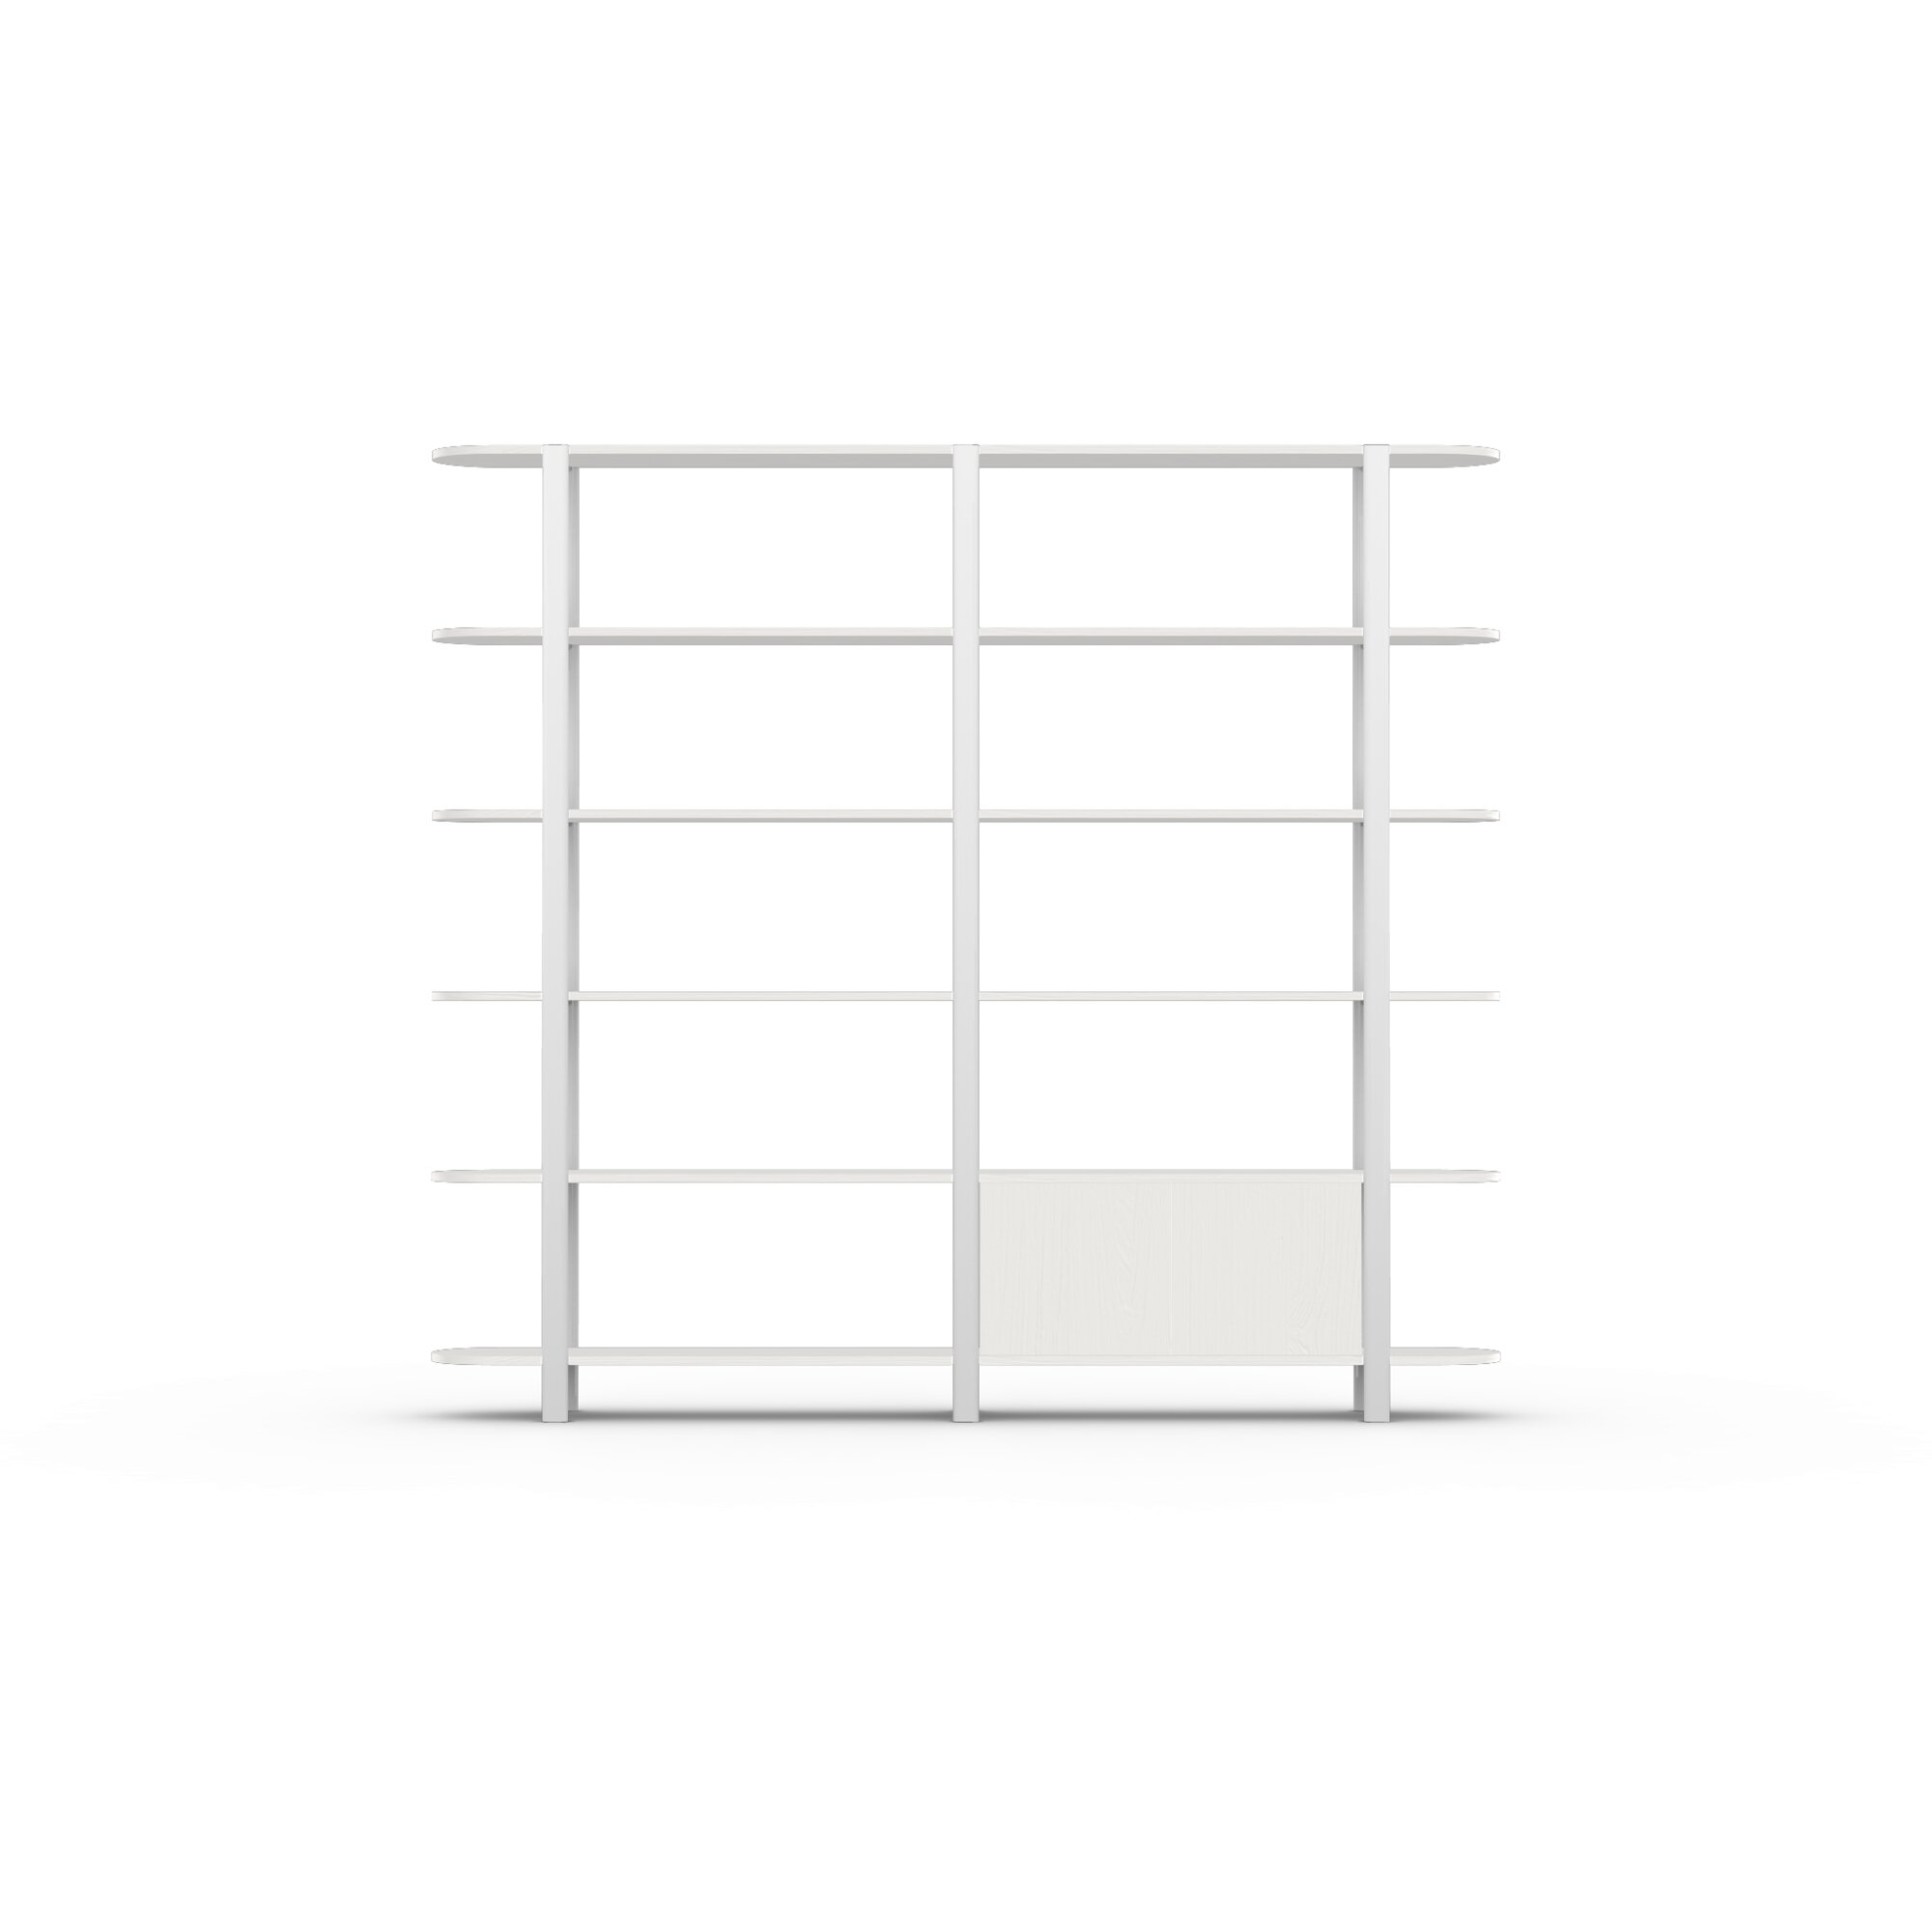 Design cabinet | Oblique Cabinet OB-6L Oak white lacquer | Studio HENK| 